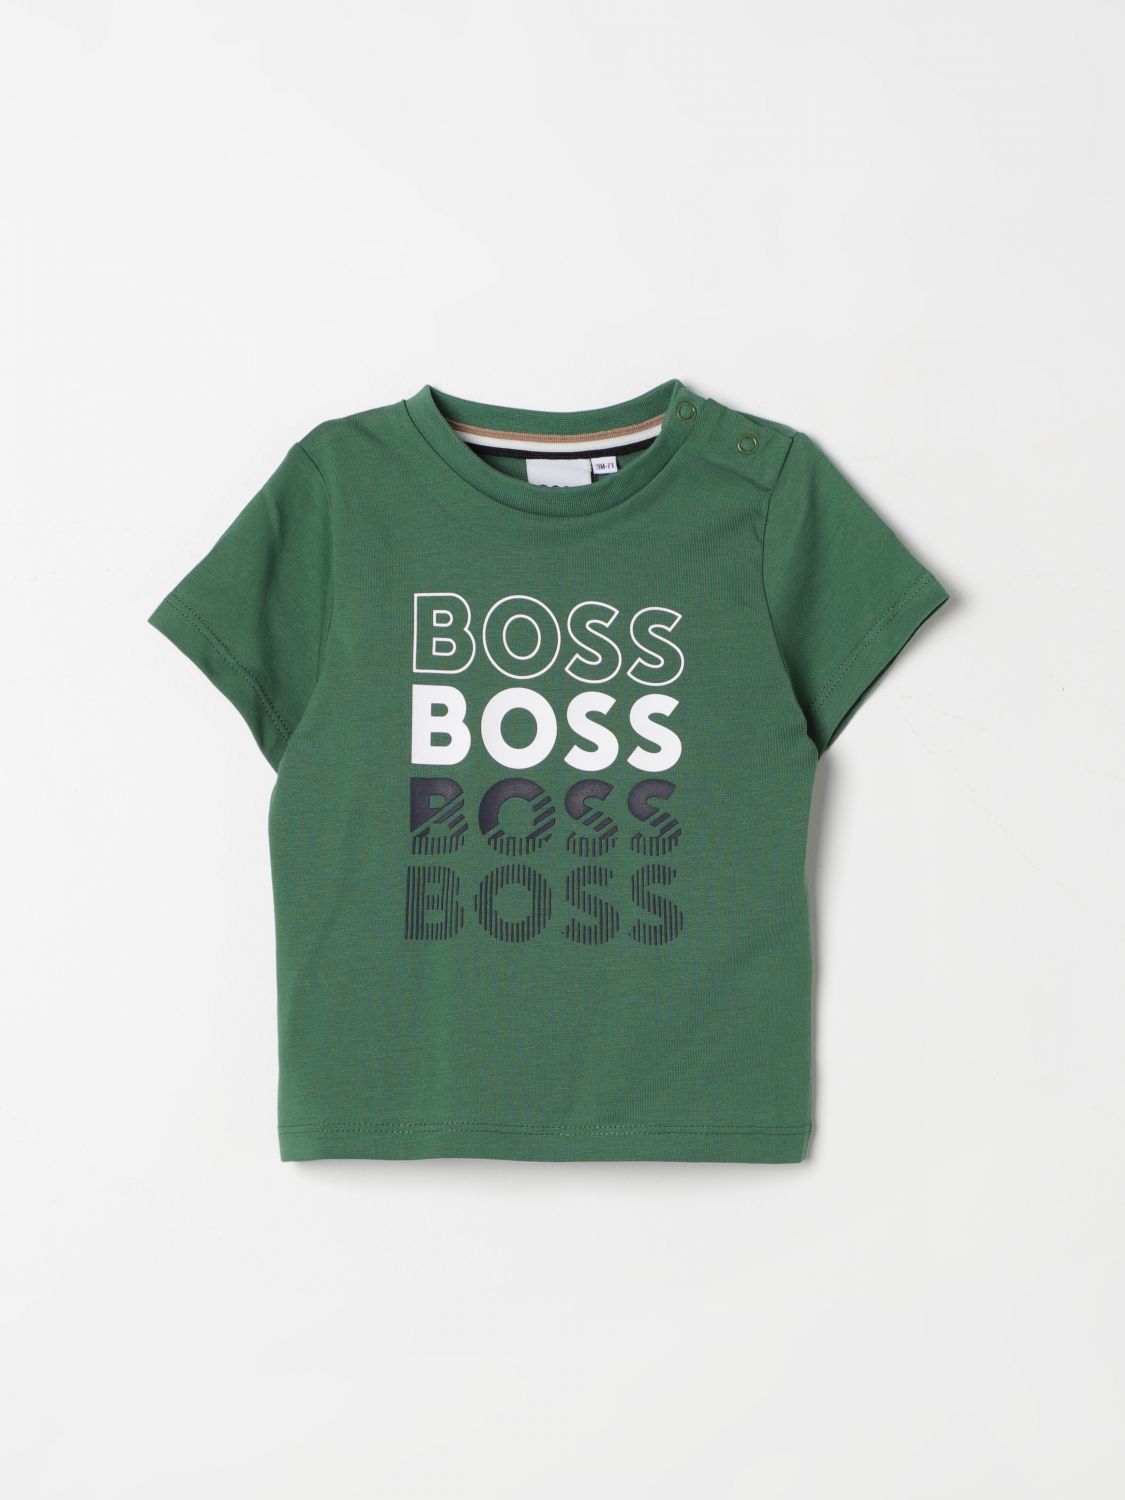 Bosswear T-shirt Boss Kidswear Kids Color Green